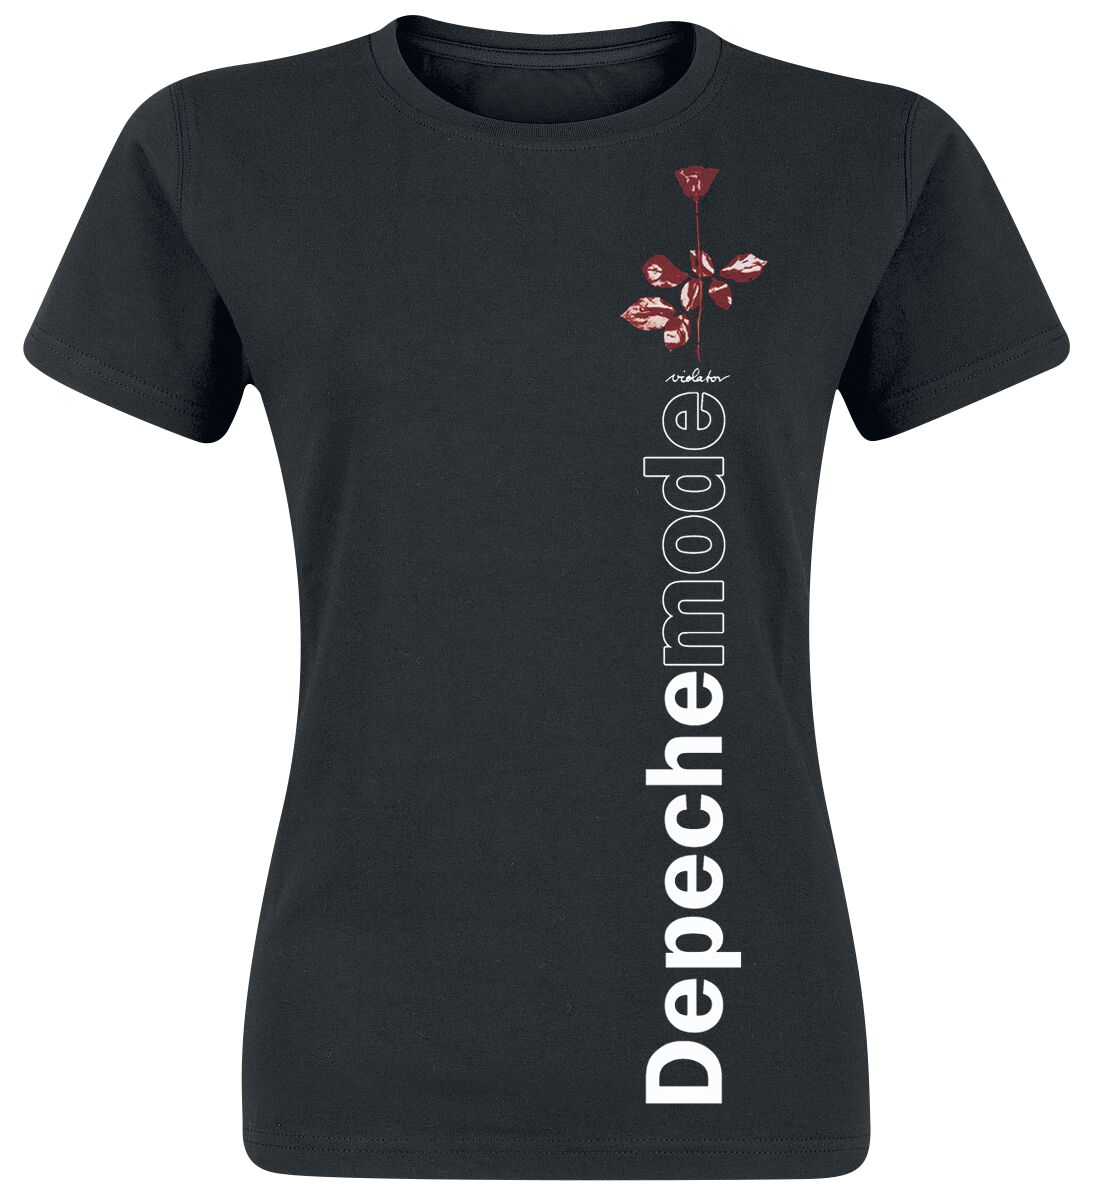 Depeche Mode T-Shirt - Violator Side Rose - S bis XXL - für Damen - Größe M - schwarz  - Lizenziertes Merchandise!